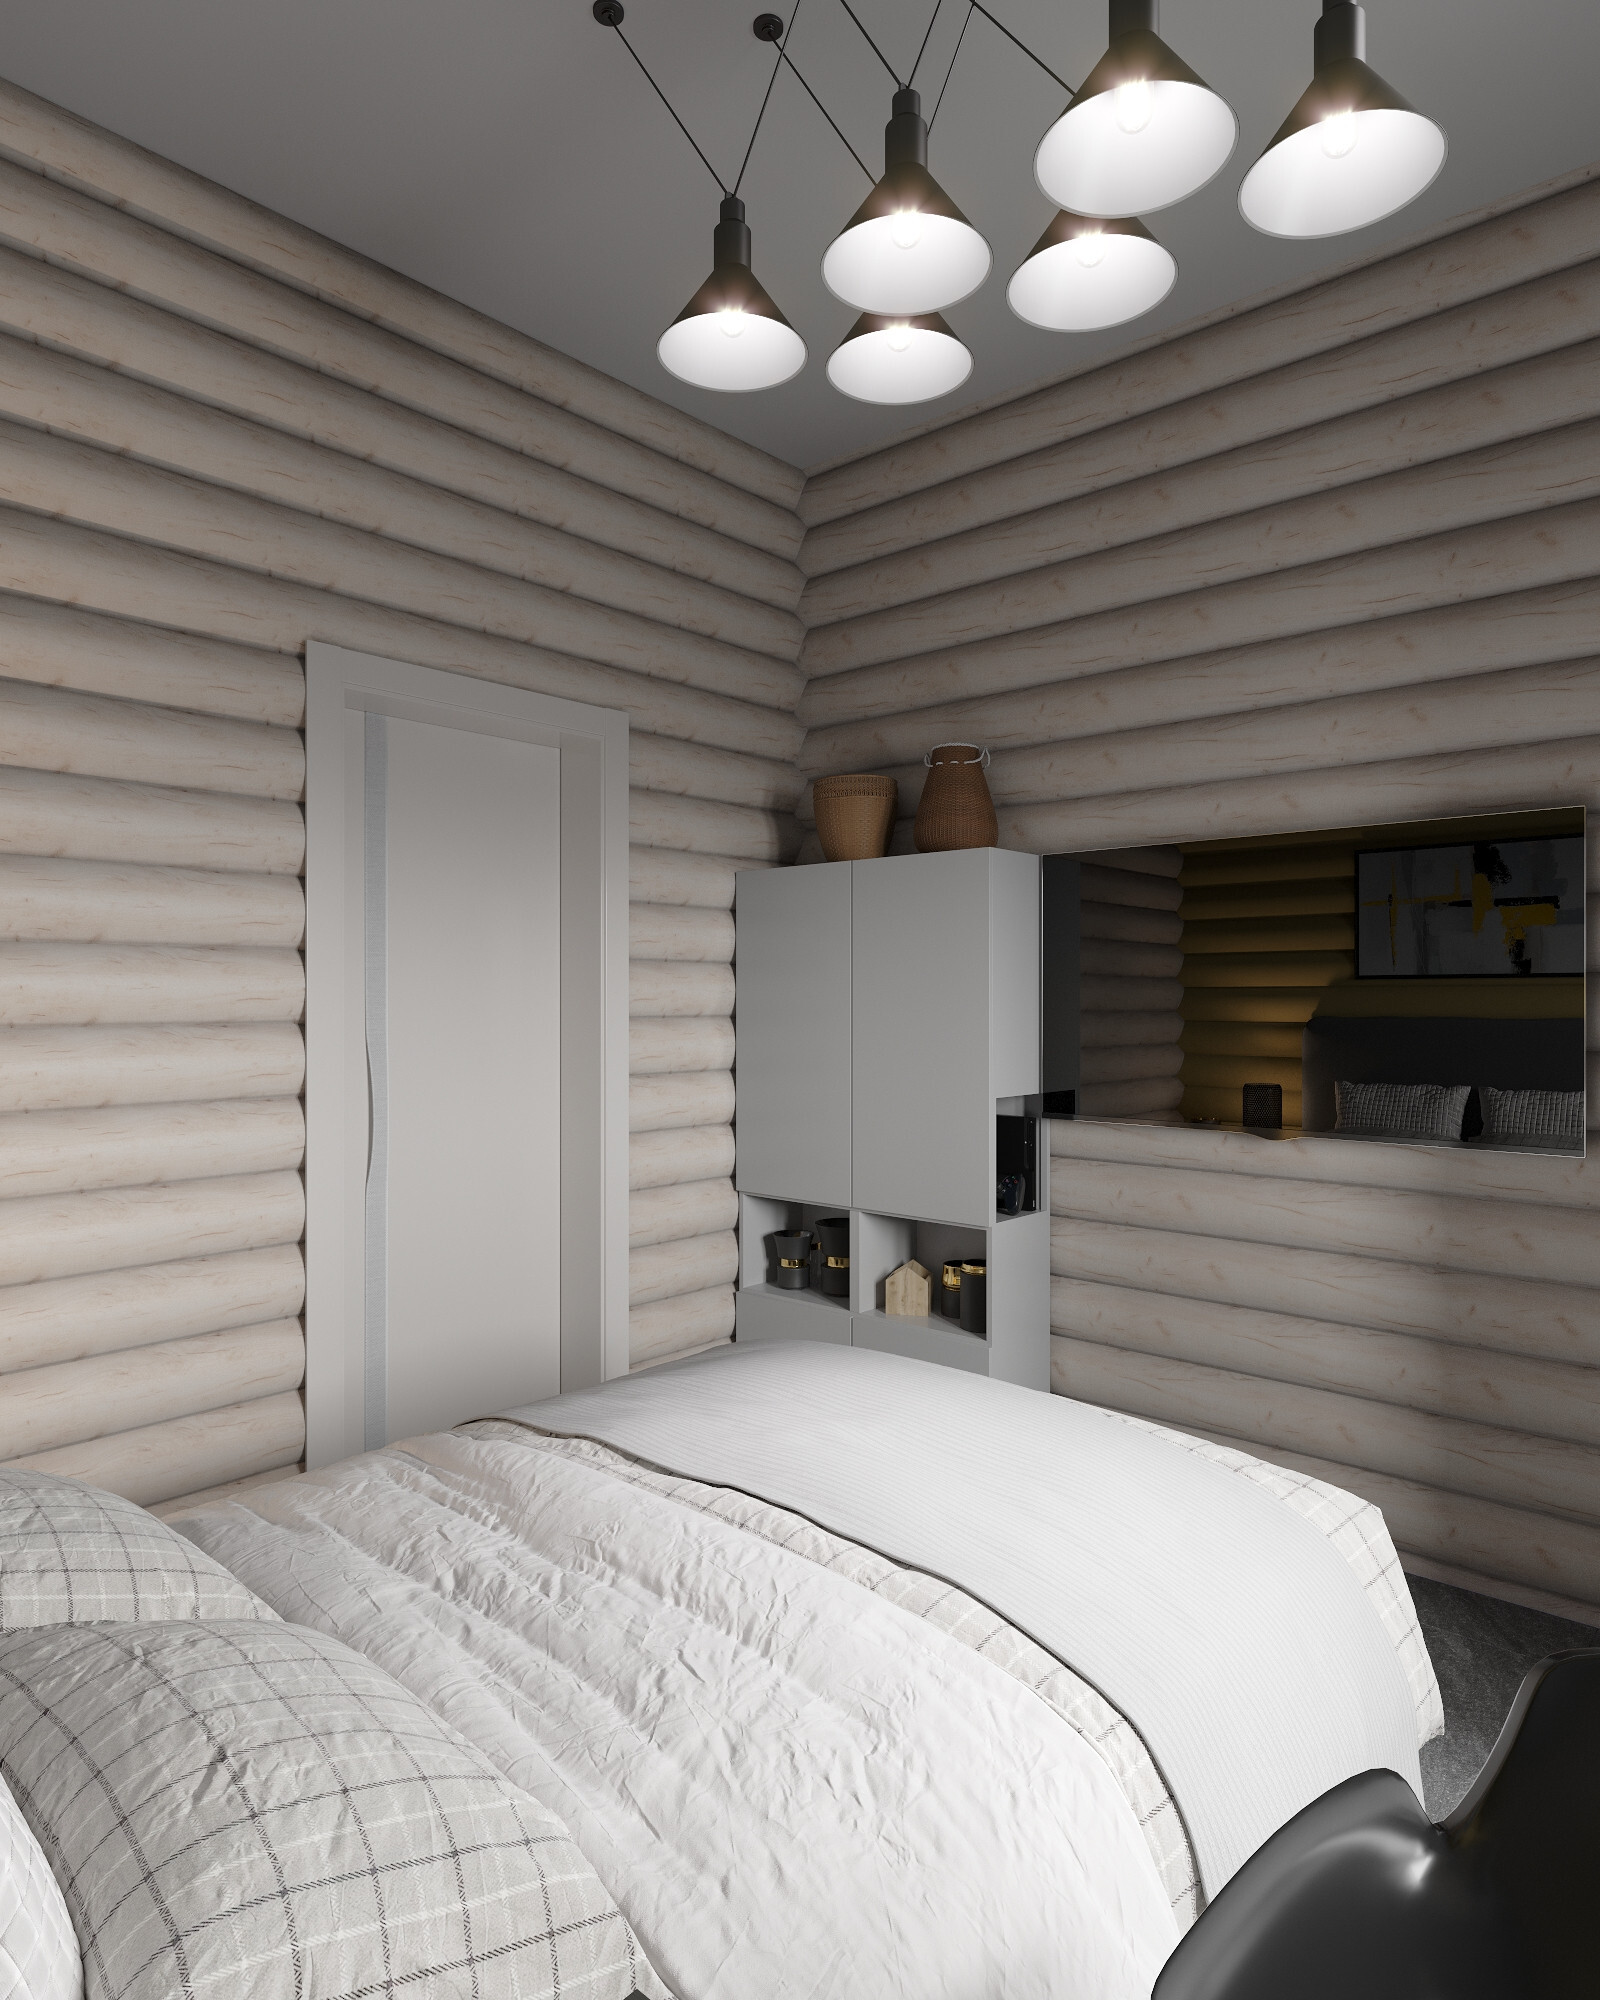 Интерьер спальни с в деревянном доме, сауной, рейками с подсветкой, подсветкой настенной, подсветкой светодиодной, светильниками над кроватью и с подсветкой